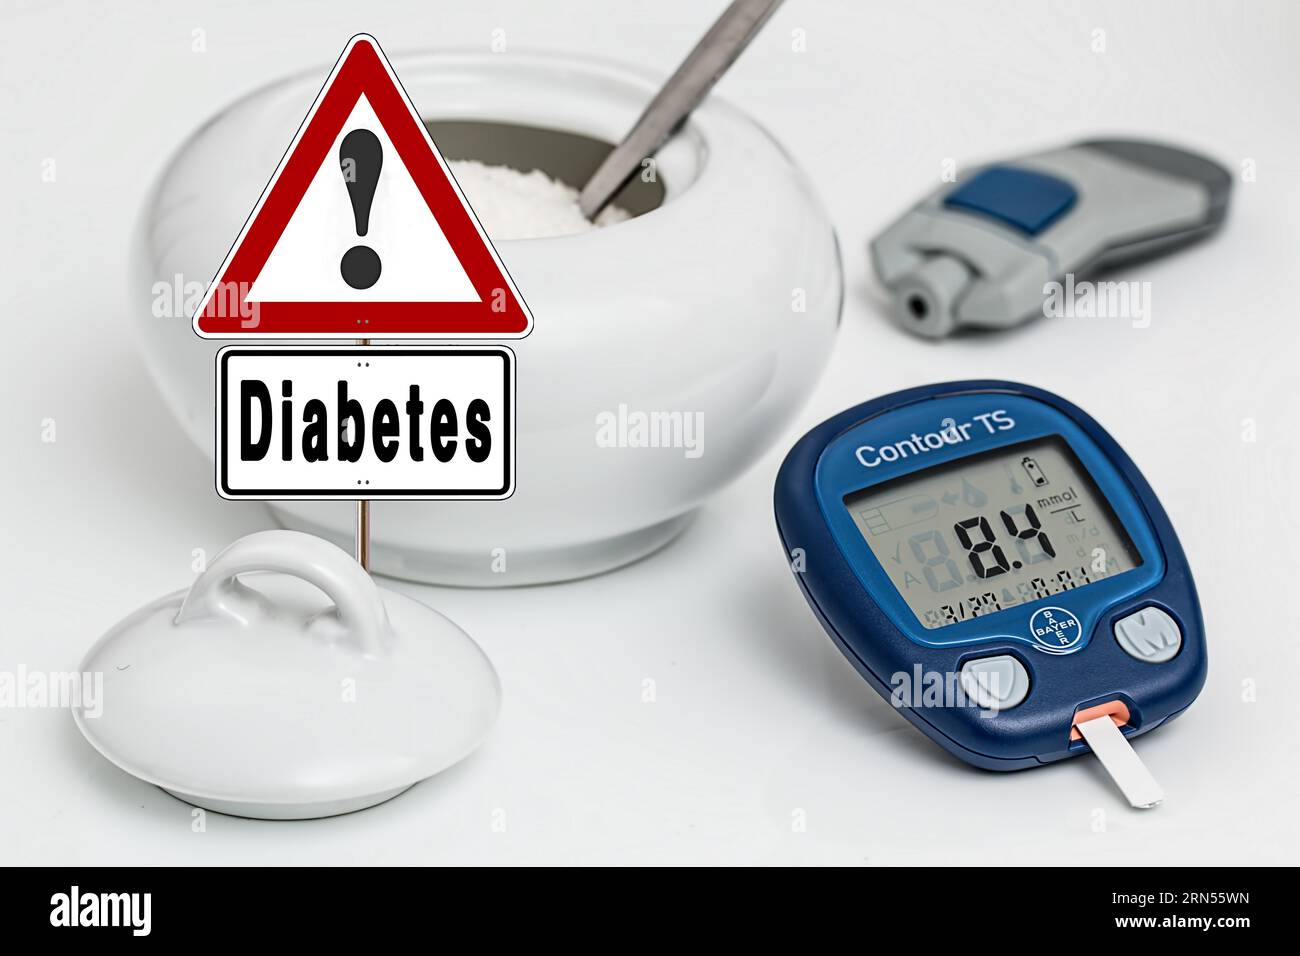 Symbolisches Bild, Hinweisschild, Vorsicht, Hinweis auf Diabetes, Zucker, Süßigkeiten, Gesundheitsrisiko, Diabetes Typ 1, Diabetes Typ 2, Lebensmittel, Medizincheck Stockfoto